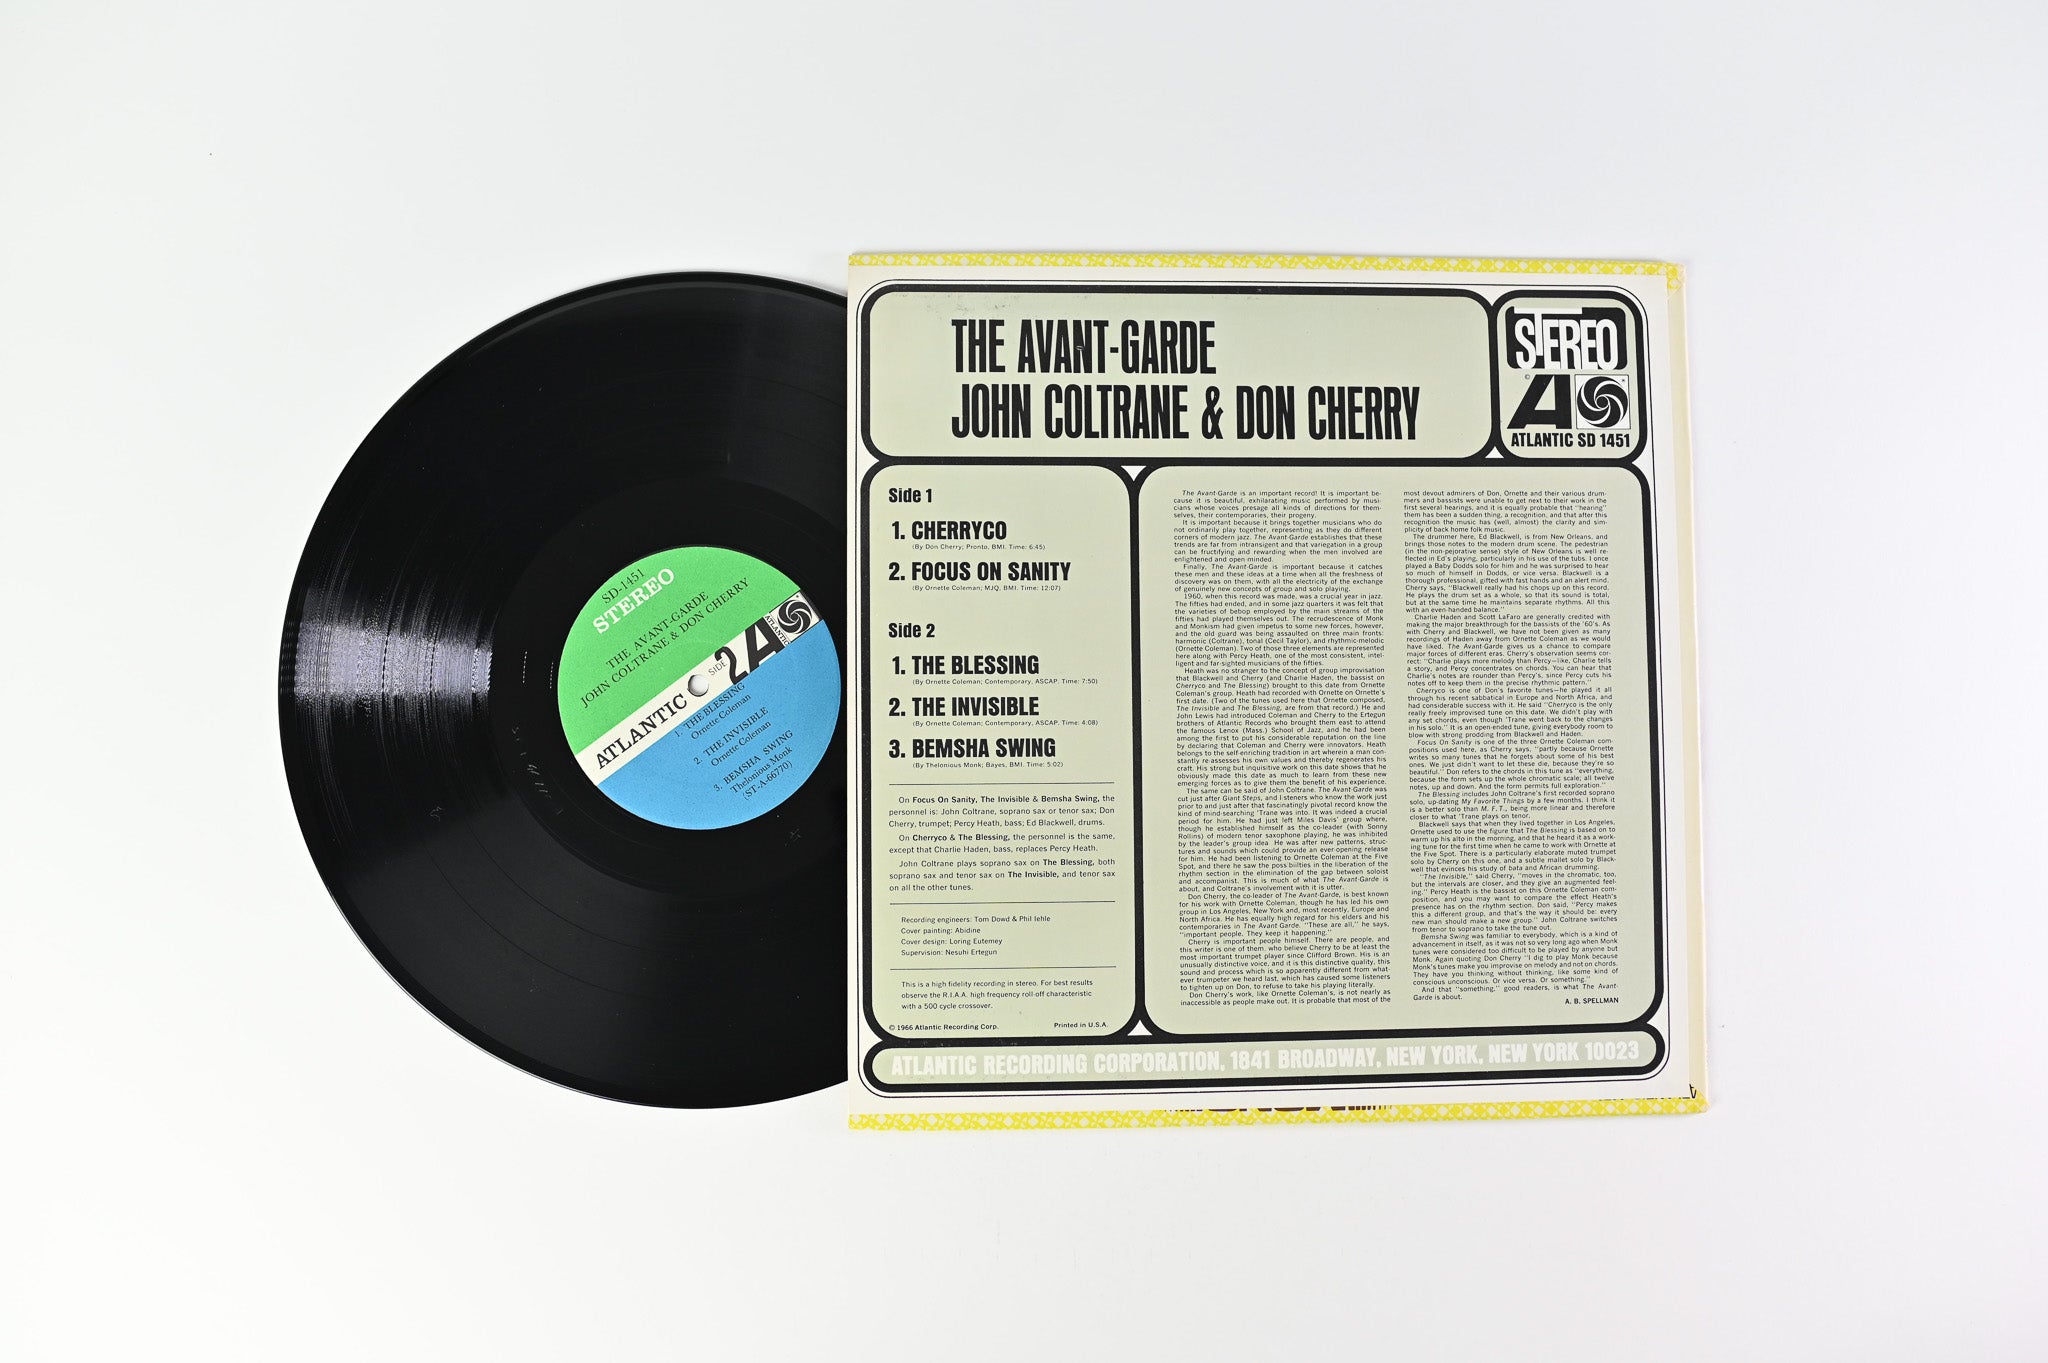 John Coltrane - The Avant-Garde on Atlantic Stereo